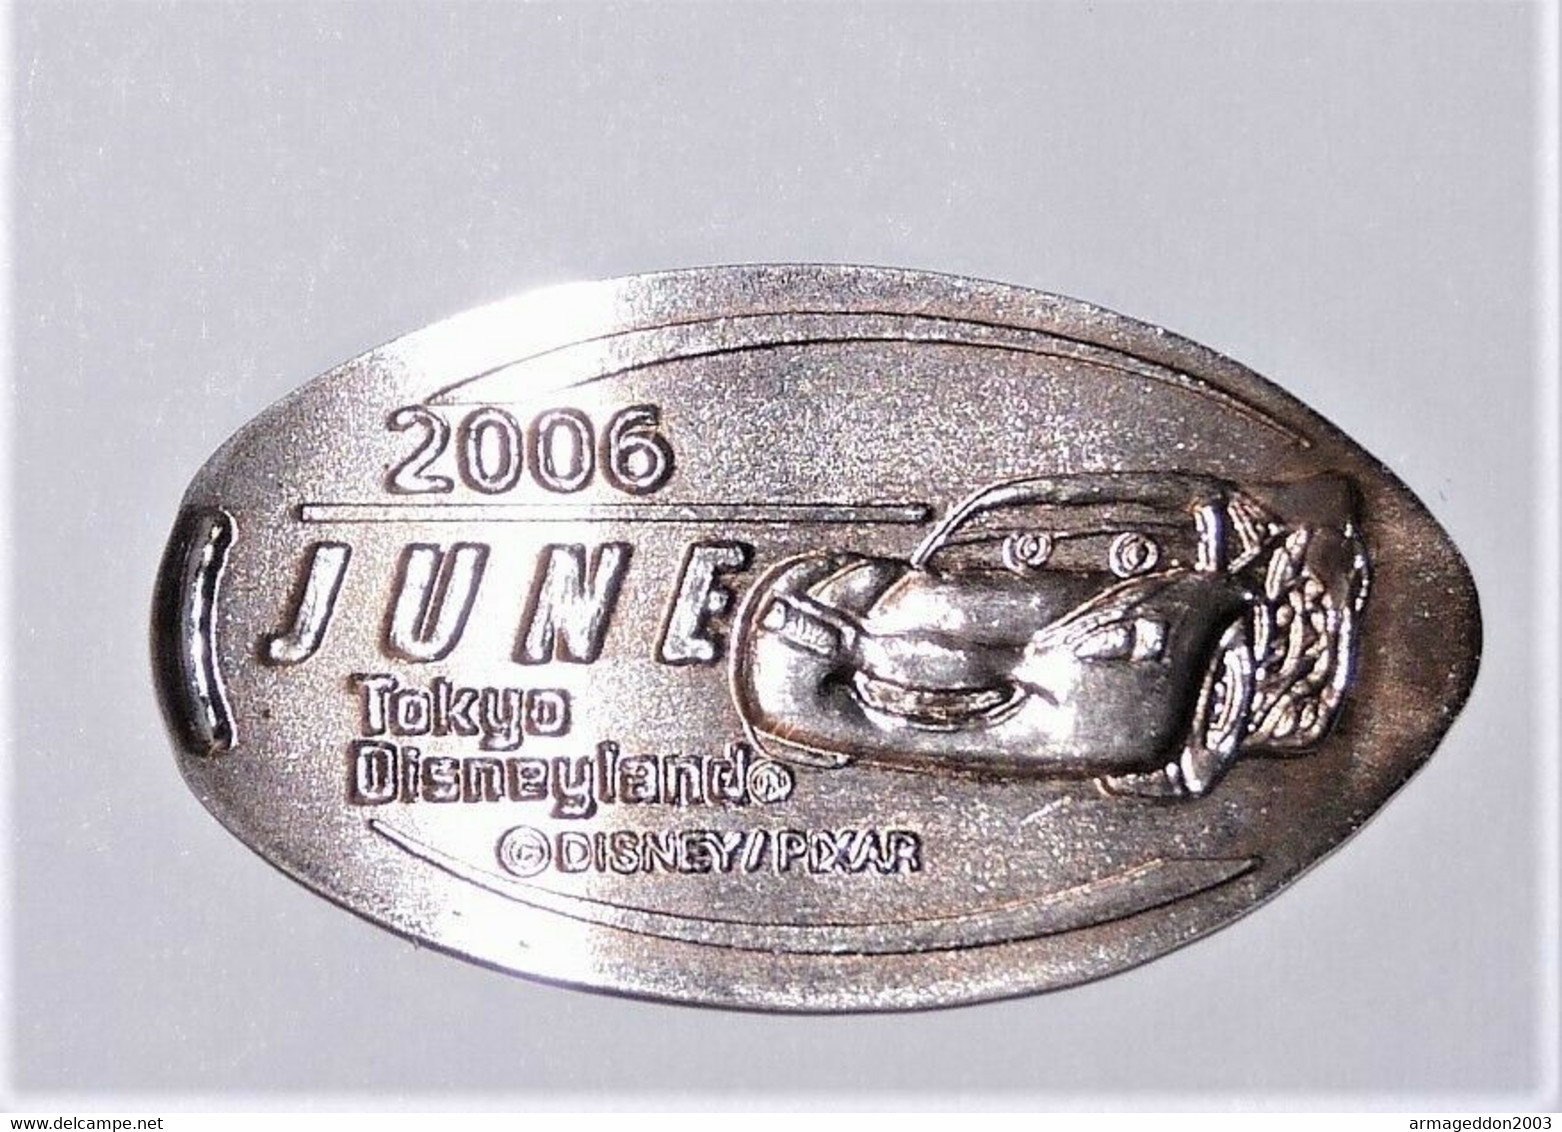 Pressed Coins Souvenir Medallion Médaillon Medaille Cars 2006 Pixar Disney - Monete Allungate (penny Souvenirs)